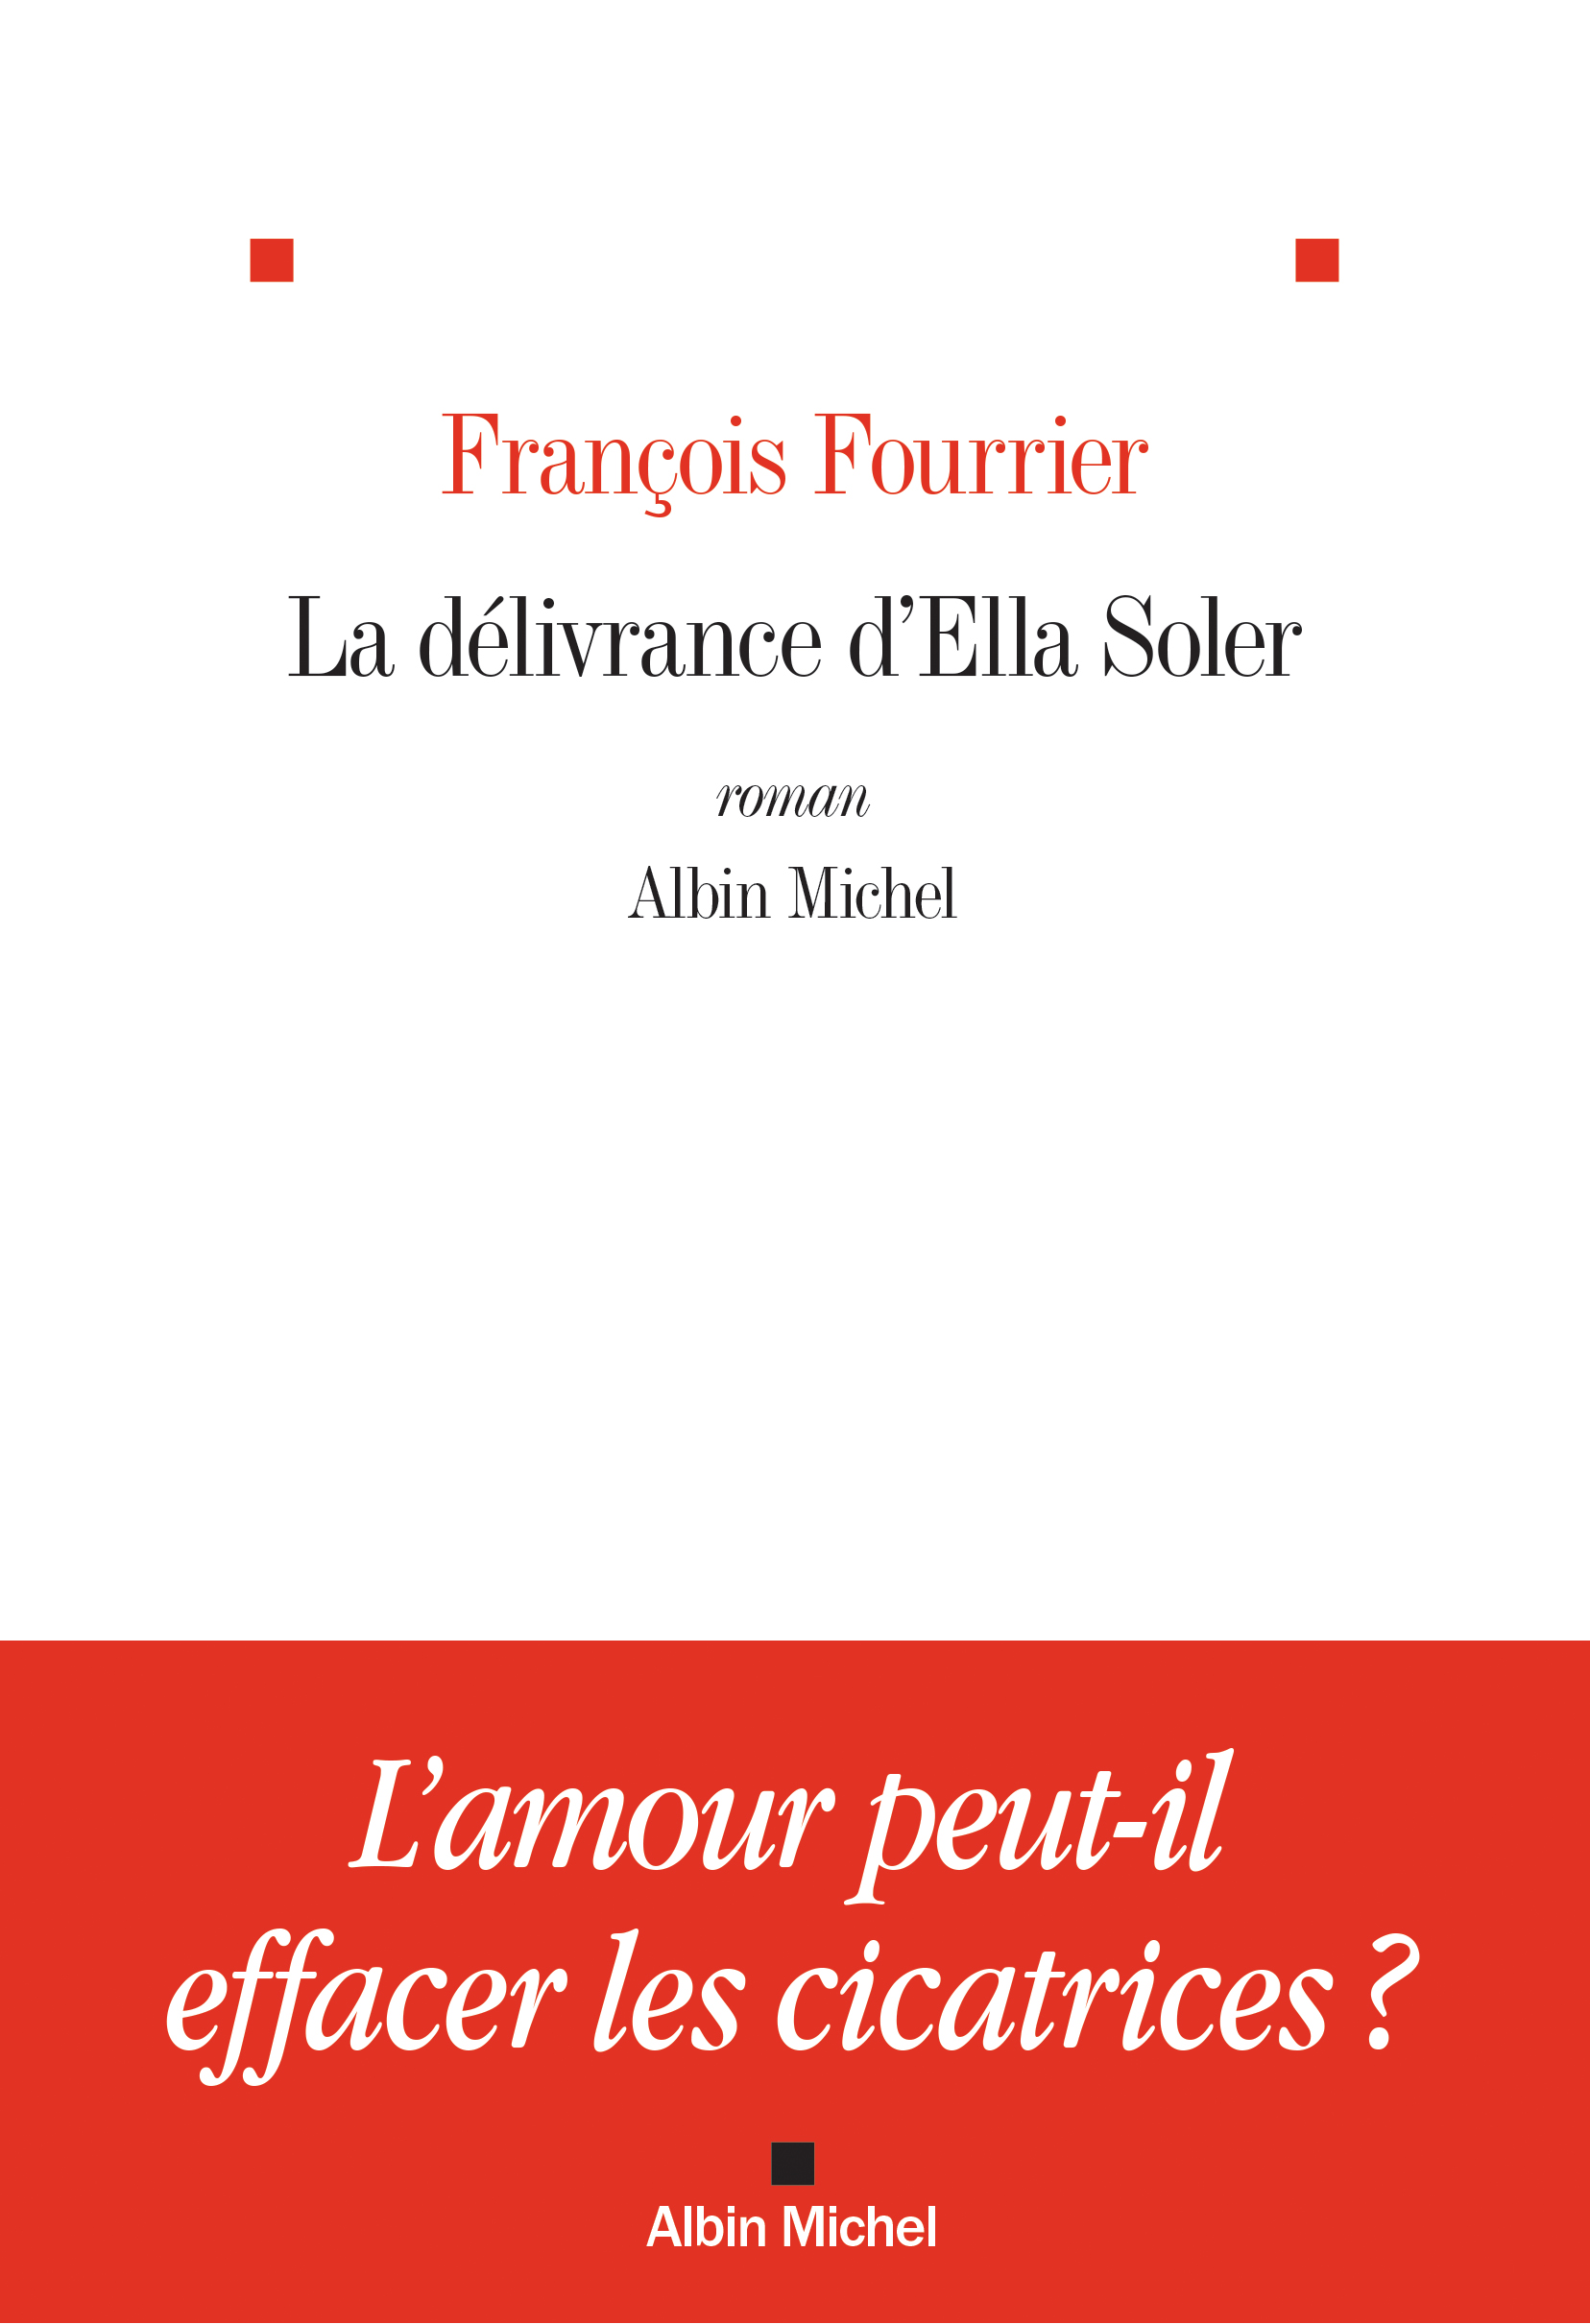 Couverture du livre La Délivrance d'Ella Soler